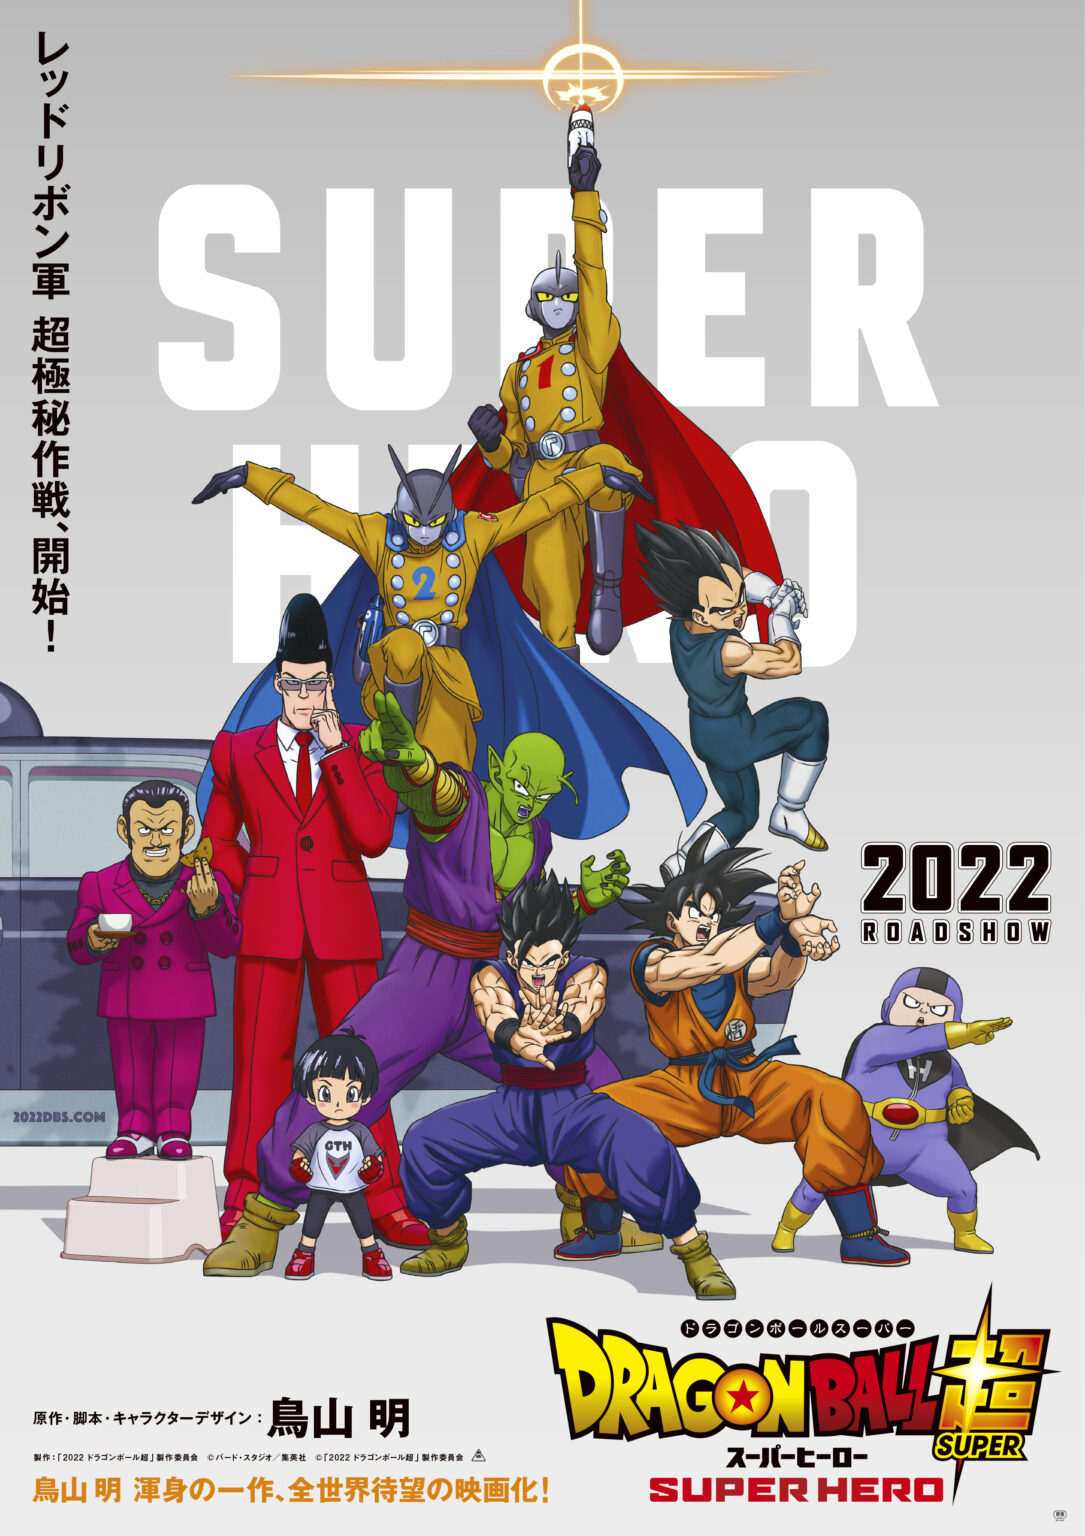 Dragon Ball Super: Super Hero New Trailer Released 